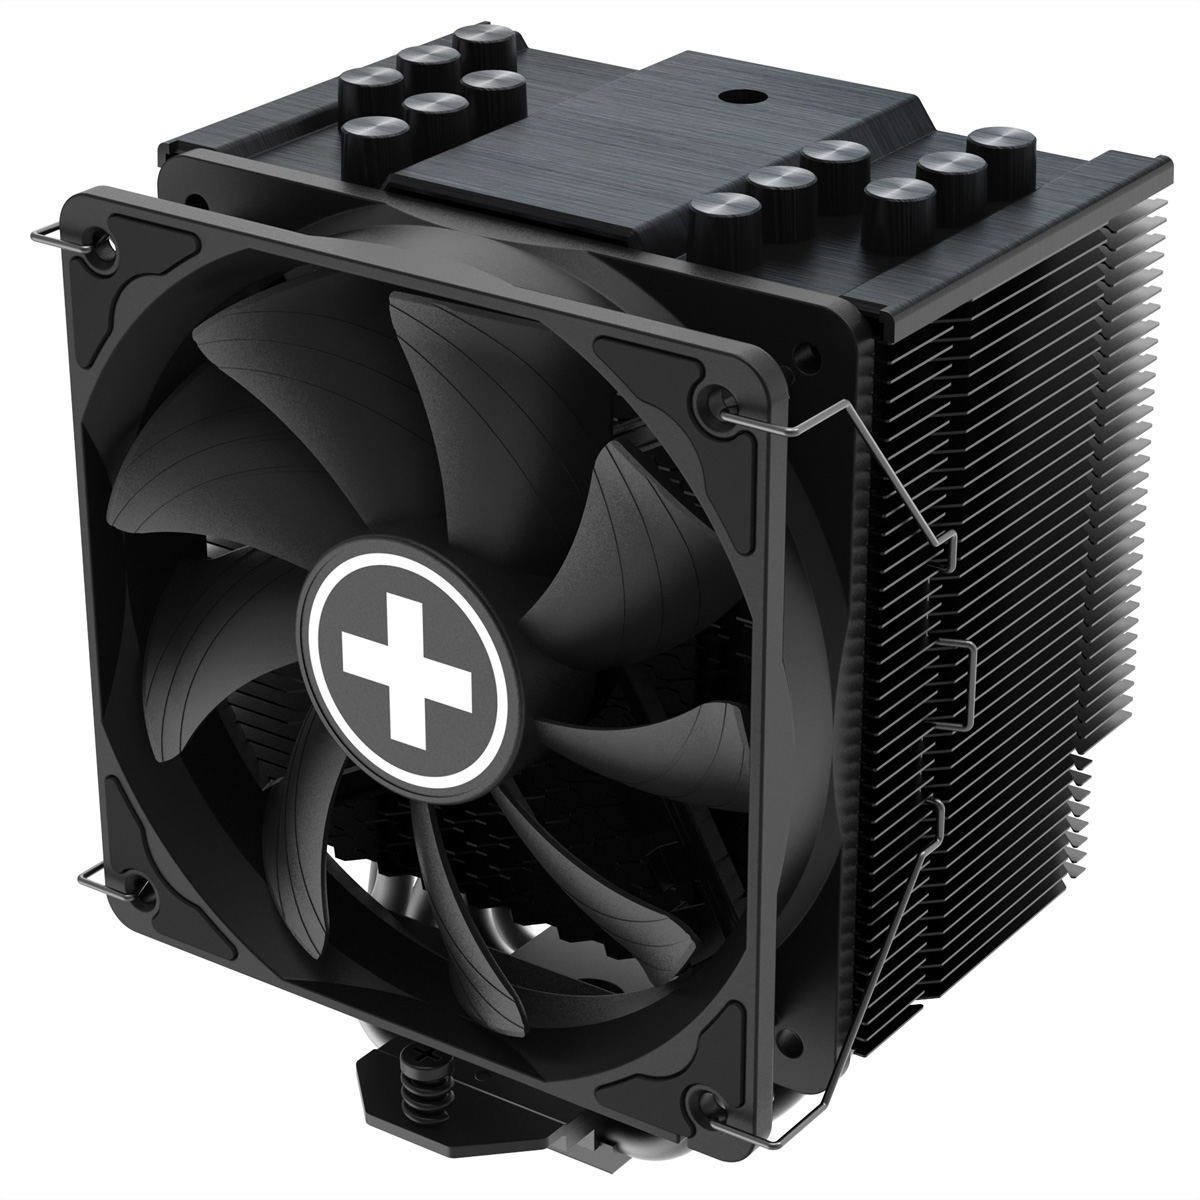 XILENCE M906 CPU AMD und Intel schwarz Kühler Kühler/Lüfter